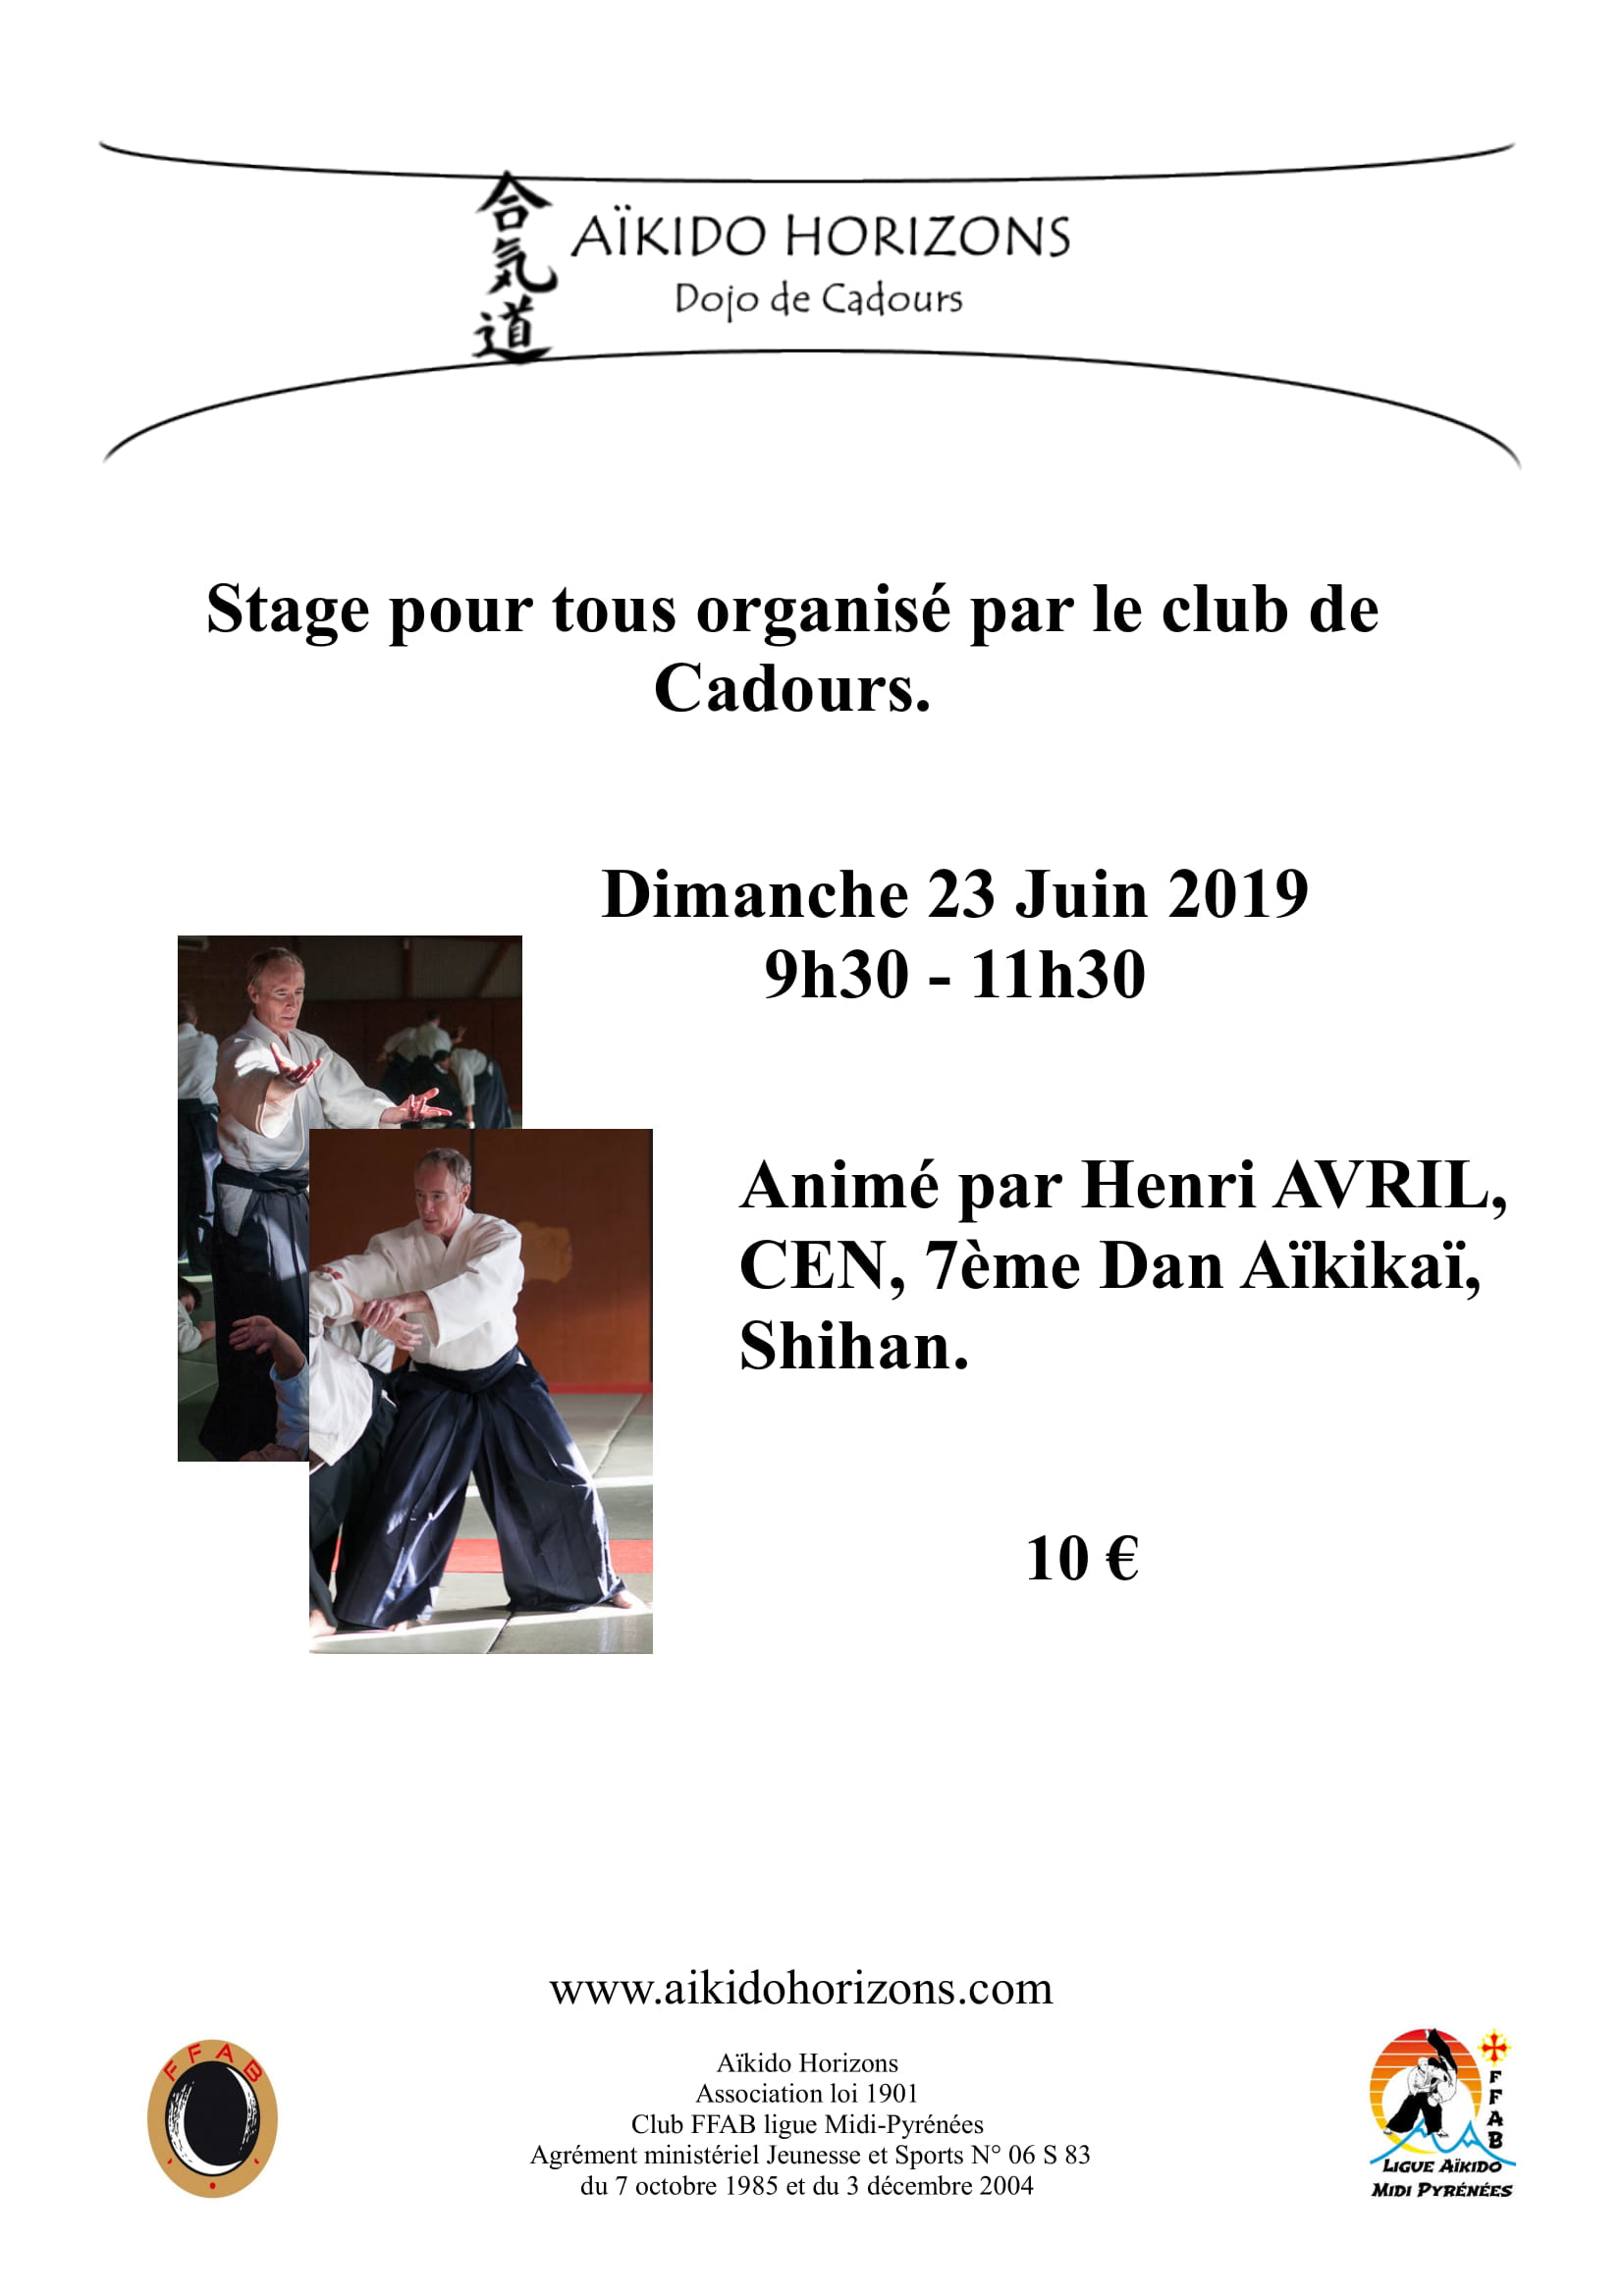 23 Juin 2019 Stage Animé par Henri AVRIL, CEN, 7ème Dan Aïkikaï, Shihan. De 9h30 à 11h30 à Cadours